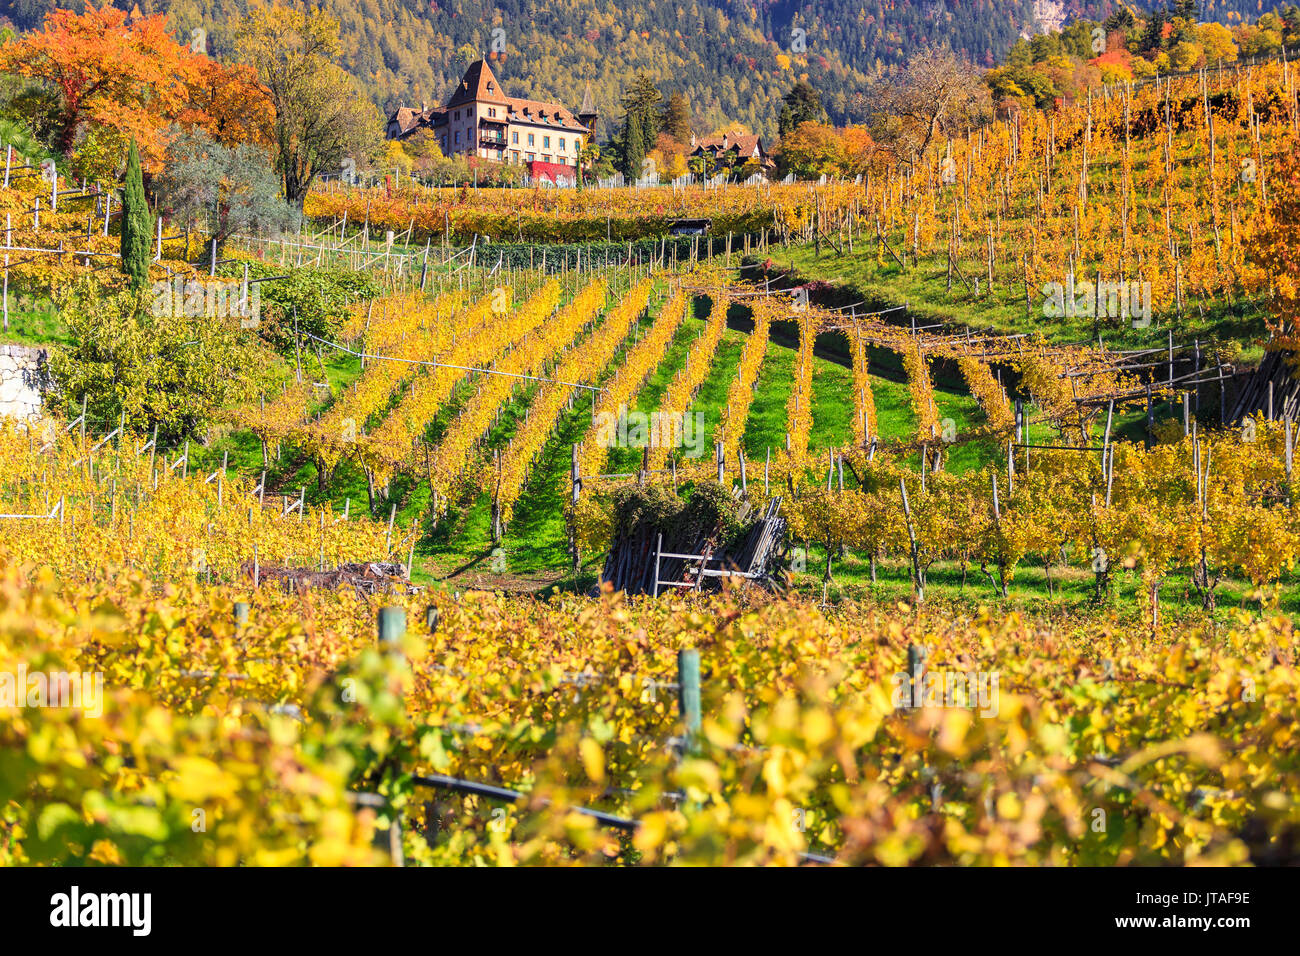 Labers castillo situado en el centro de los viñedos, Castel Labers, Merano, Val Venosta, Alto Adige-Sudtirol, Italia, Europa Foto de stock